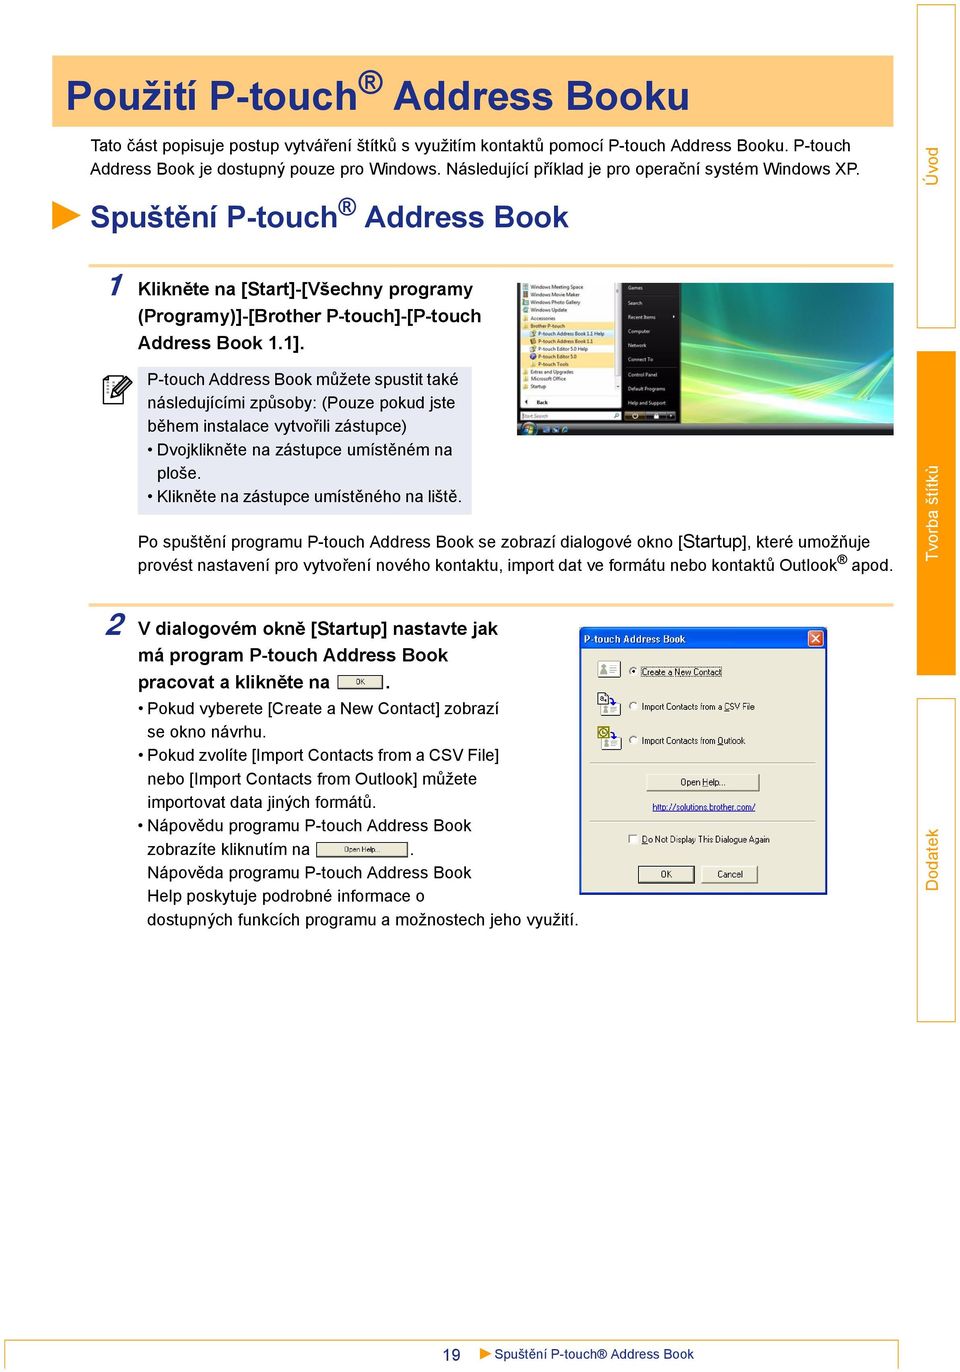 P-touch Address Book můžete spustit také následujícími způsoby: (Pouze pokud jste během instalace vytvořili zástupce) Dvojklikněte na zástupce umístěném na ploše.